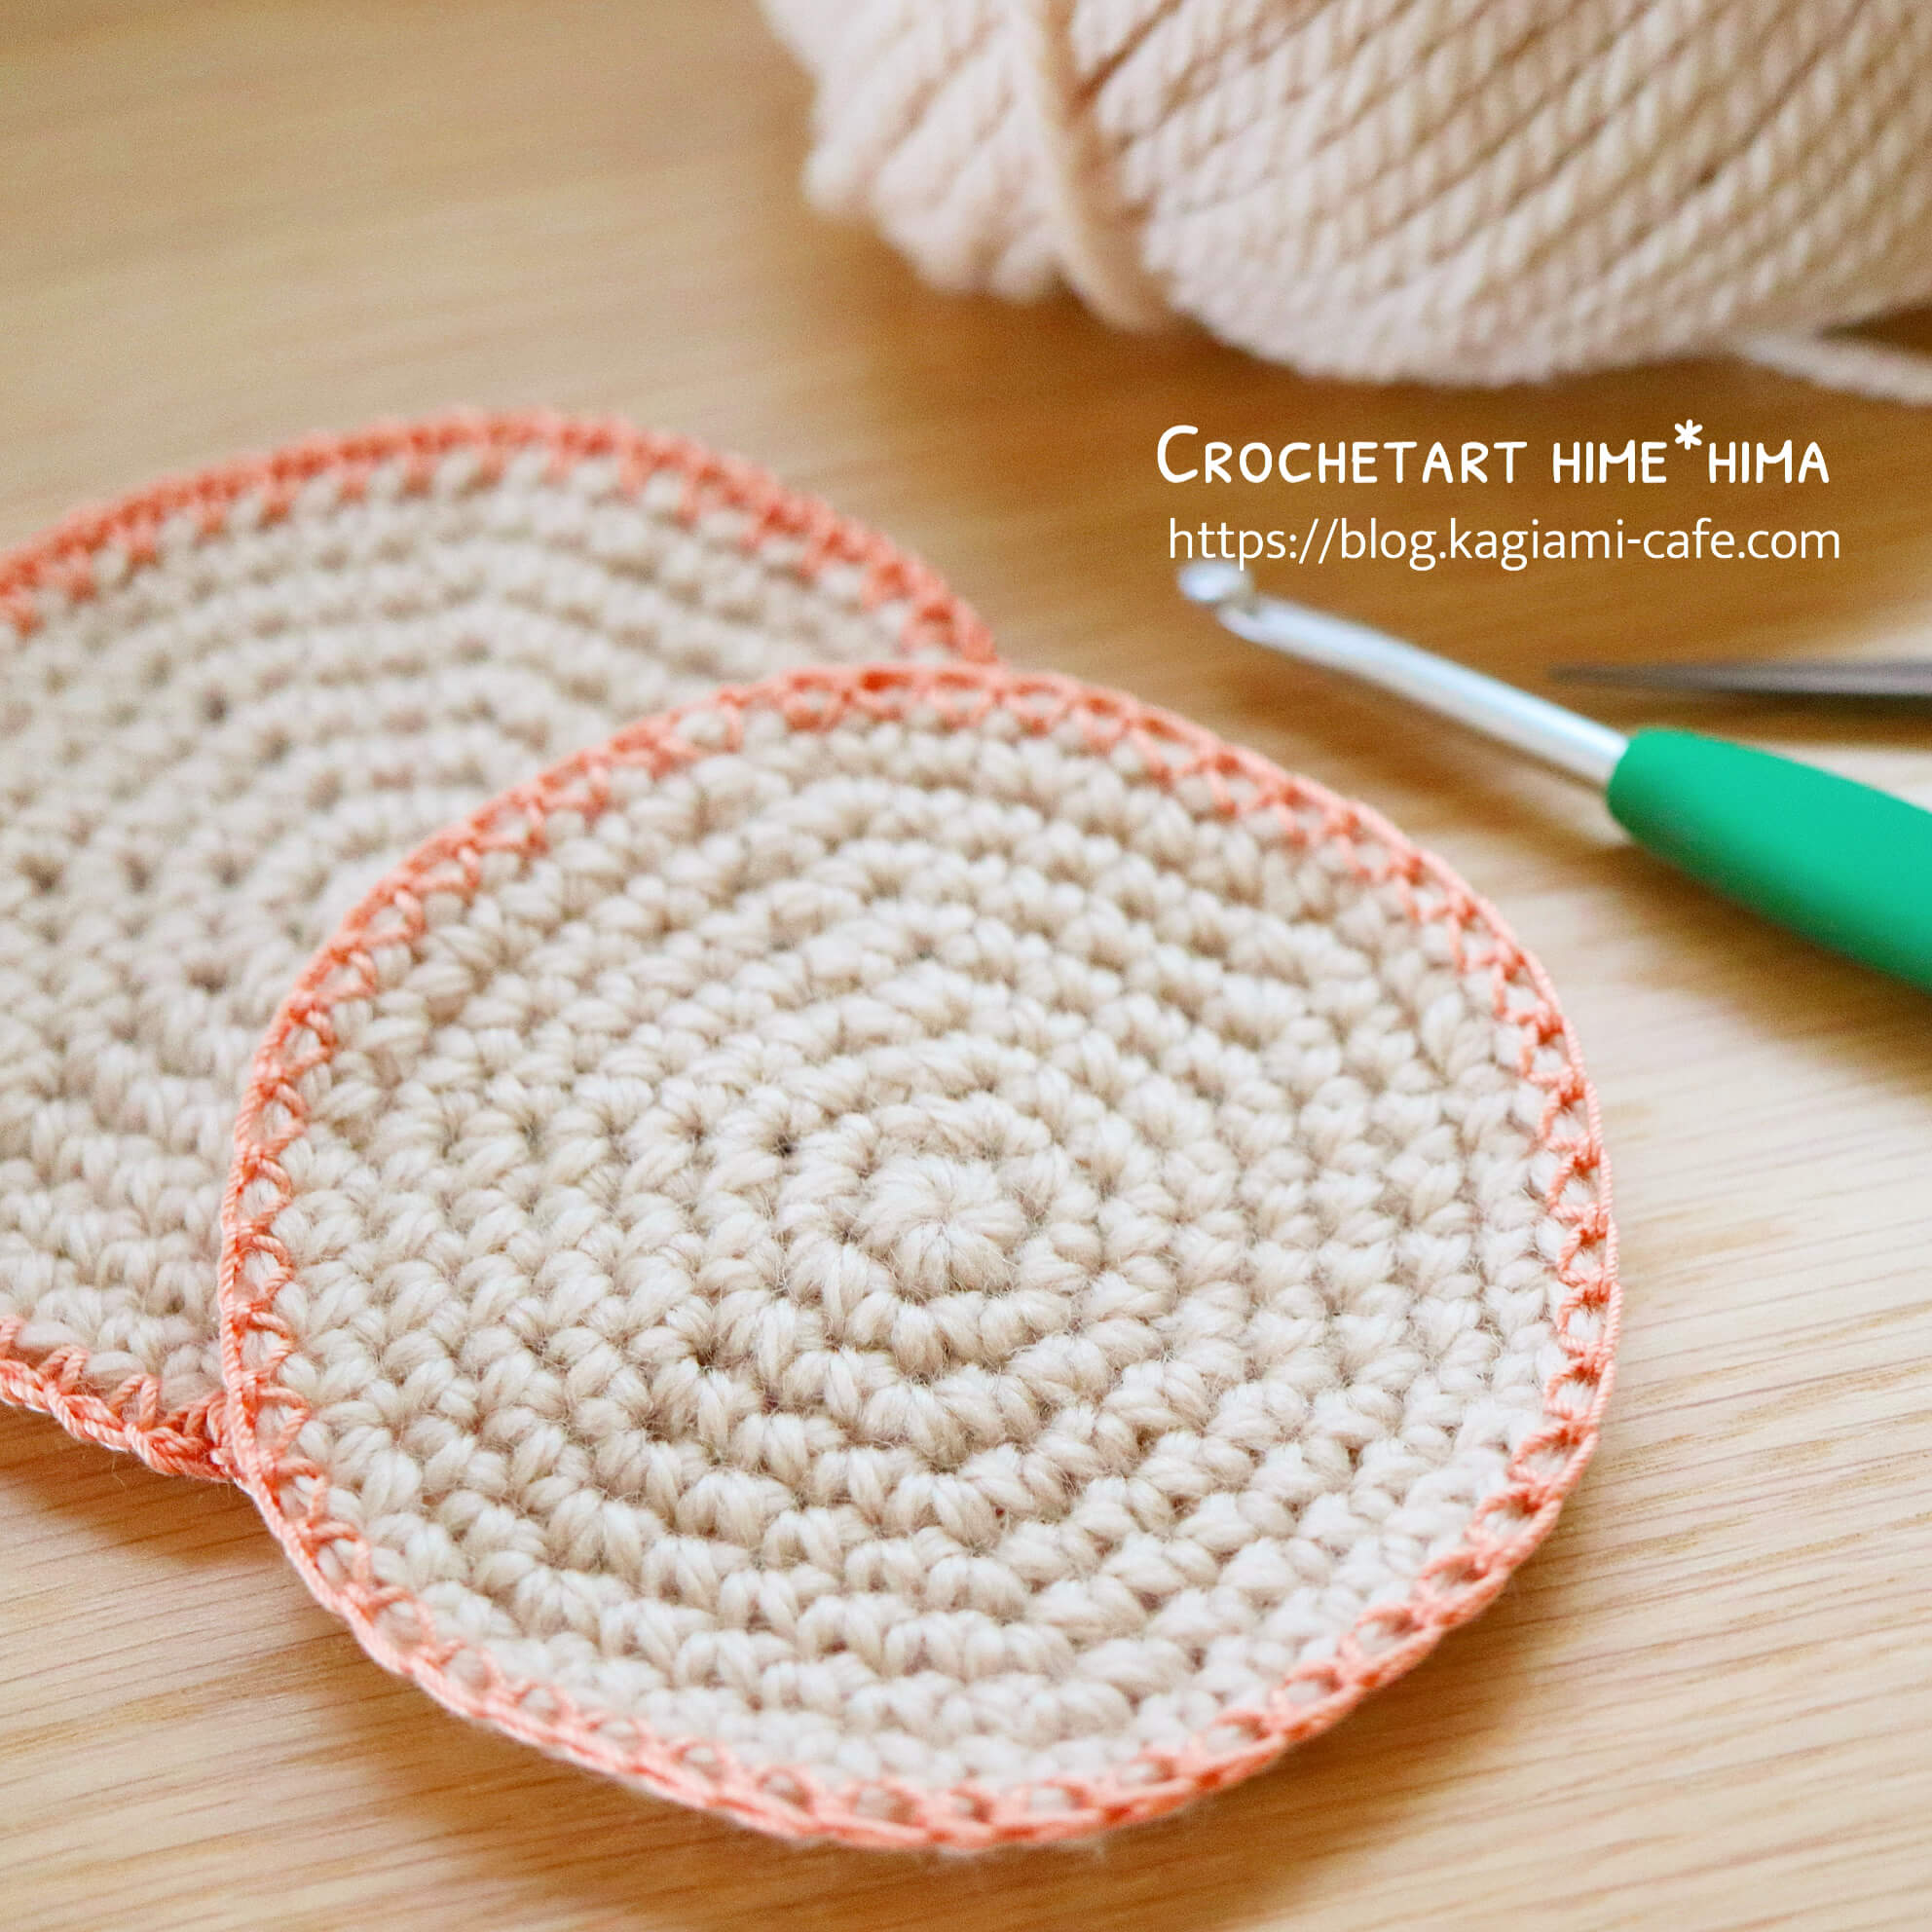 かぎ針編み初心者さん向け 細編みで丸く円を編む 編み図を見ないでも編めるようになる方法 動画あり かぎ針編みとレース編みの無料編み図サイト By Hime Hima